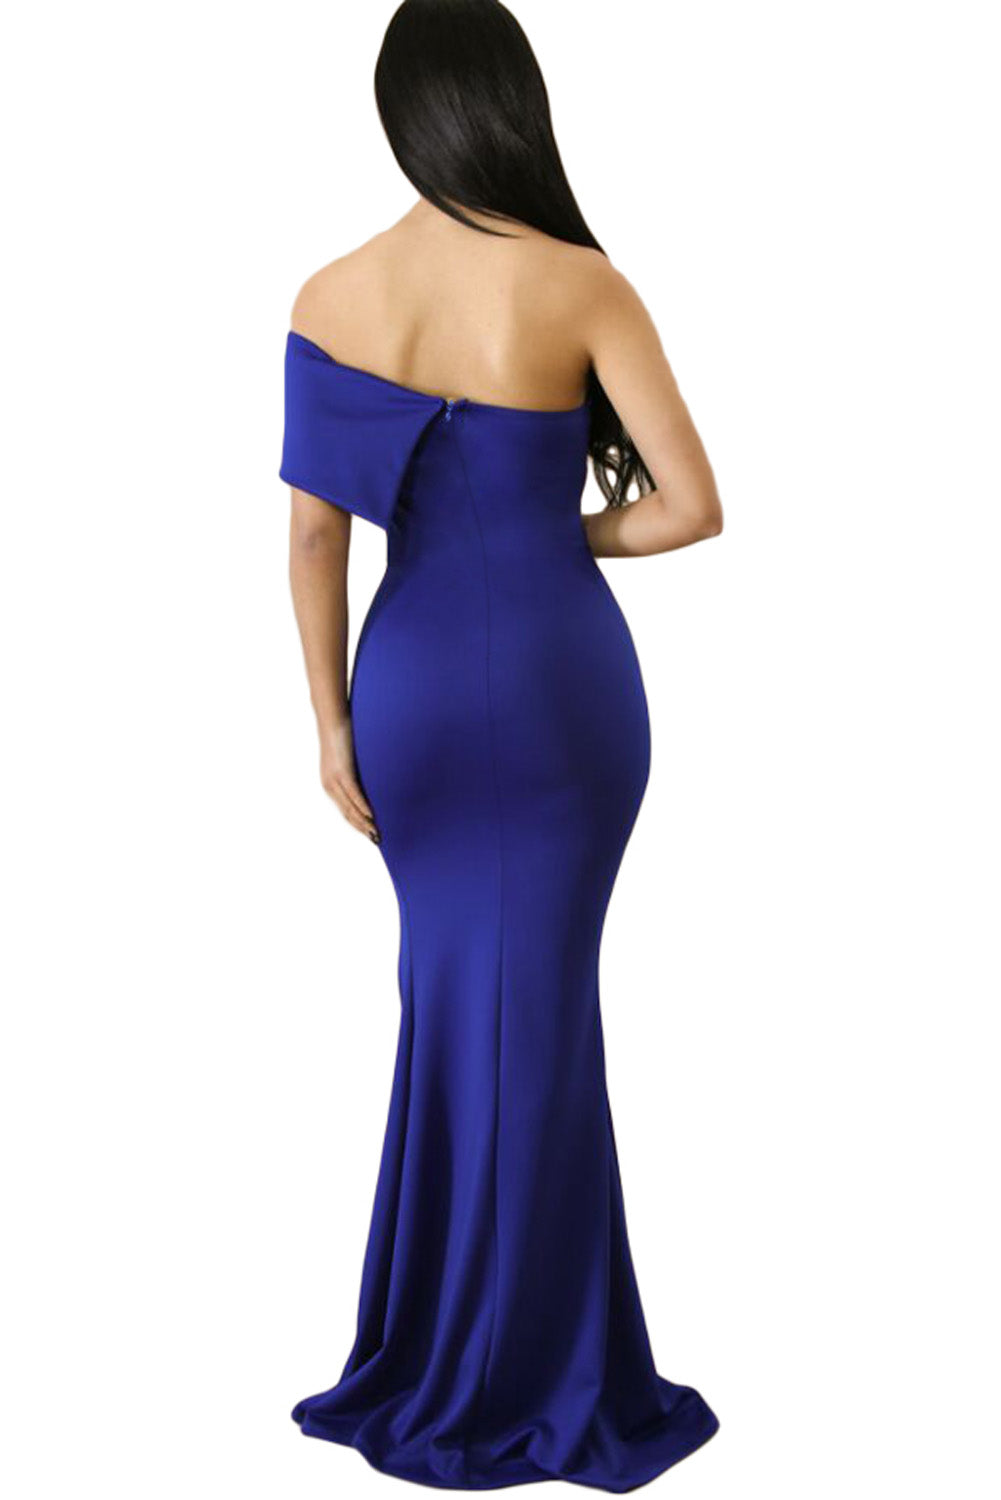 Plava maturalna haljina s jednim rukavom i jednim rukavom s otvorenim ramenima